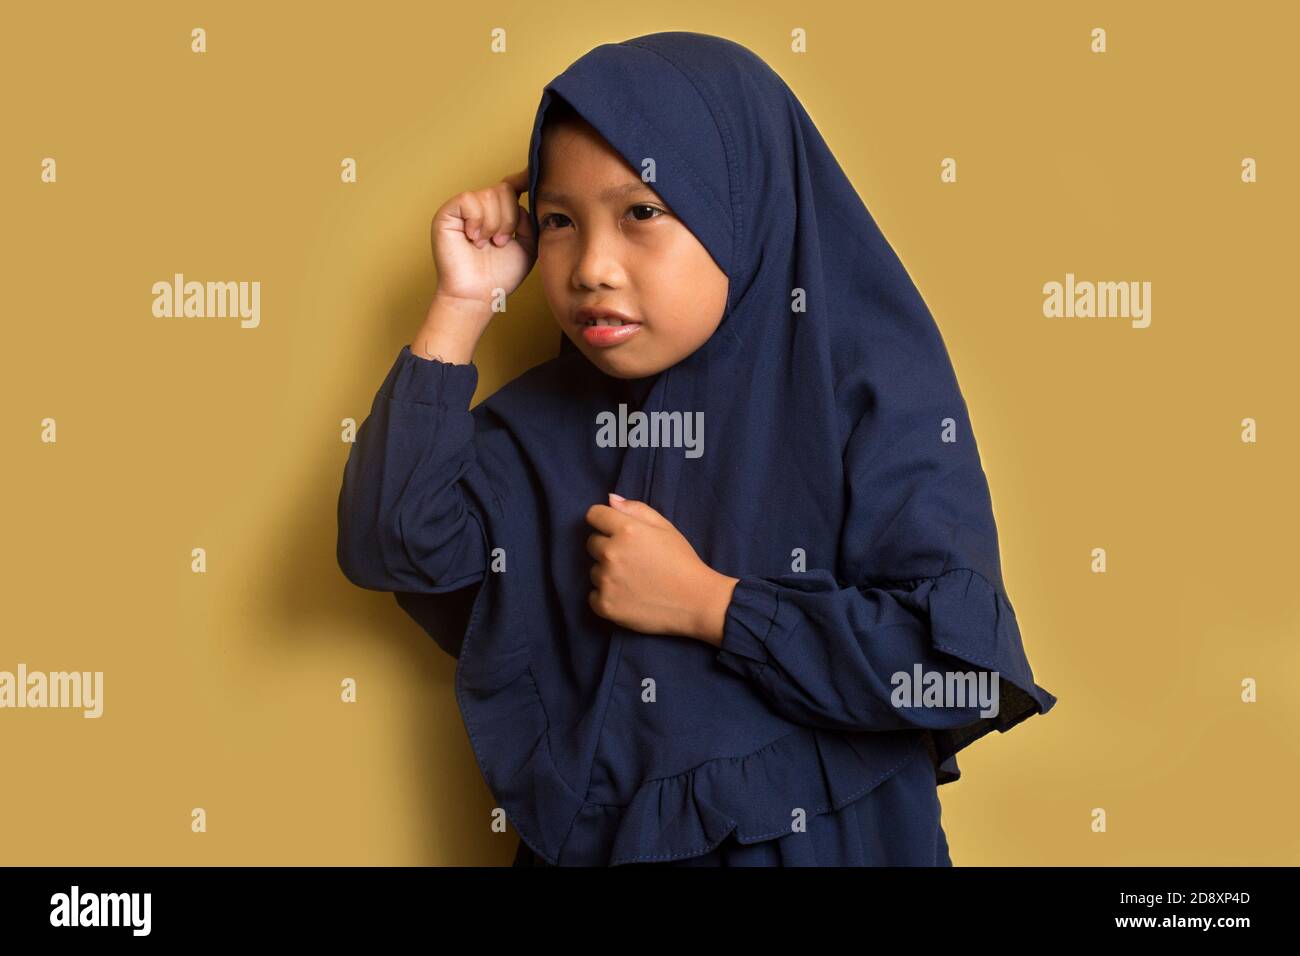 Le portrait d'une petite fille asiatique musulmane hijab pense Banque D'Images